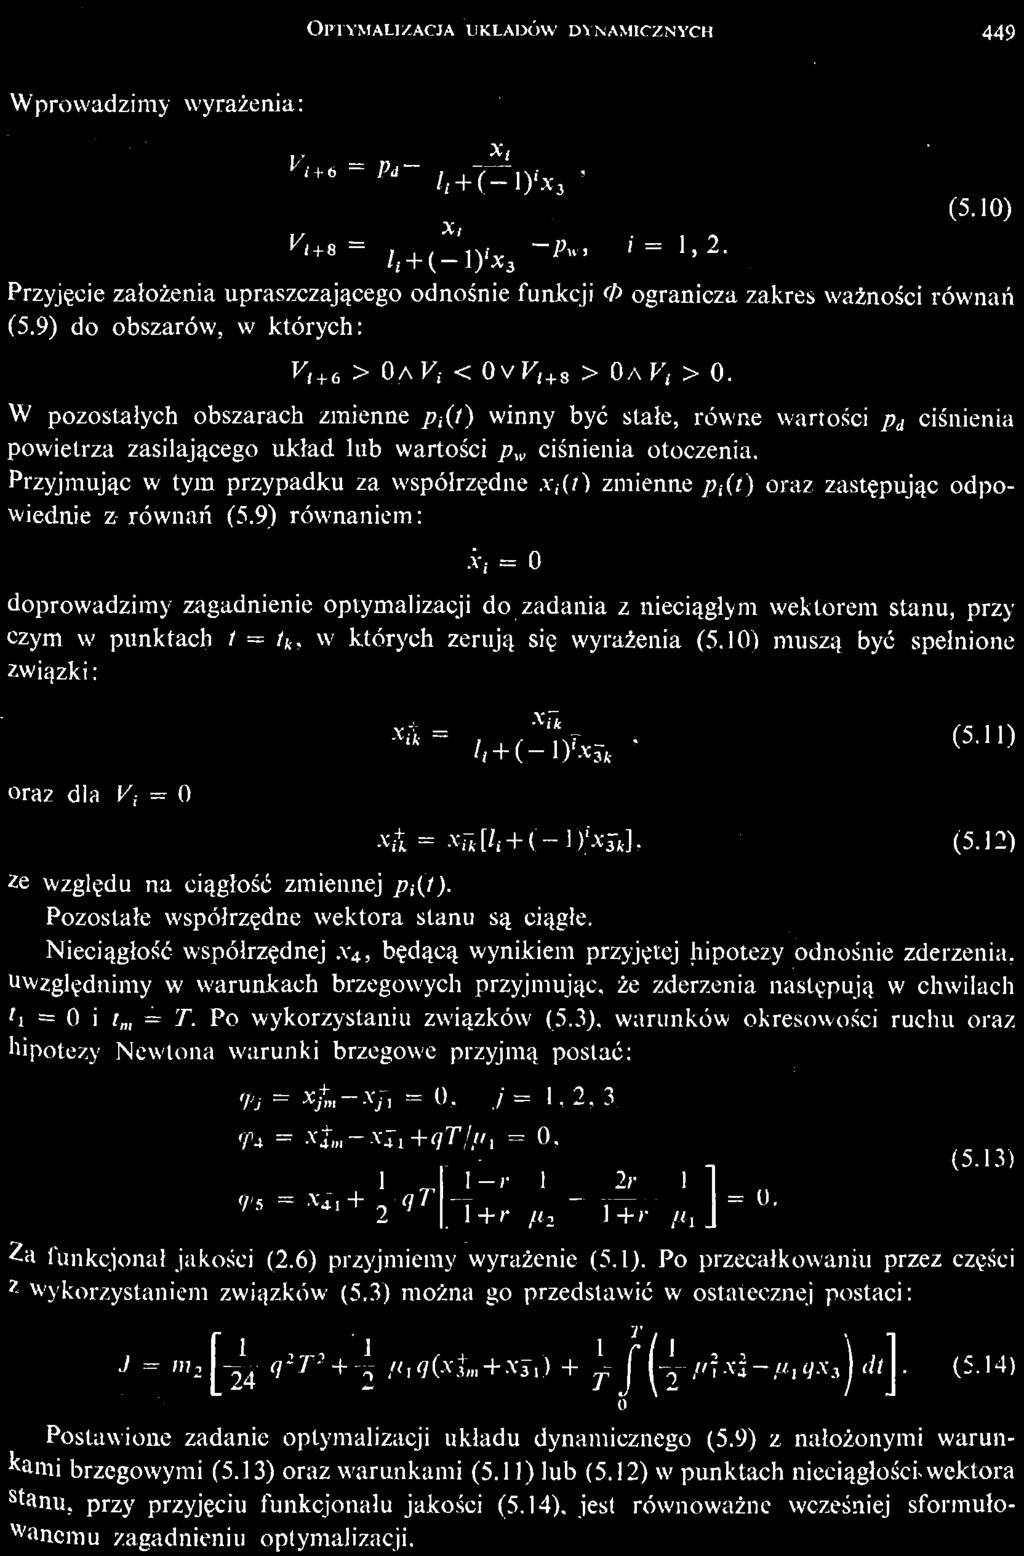 /, = T. Po wykorzystaniu zwią zków (5.3), warunków okresowoś ci ruchu oraz hipotezy Newtona warunki brzegowe przyjmą postać: <Pj = Х /т Л л = 0,./' = 1,2, 3 <PA = *&»41+«77/»1 = 0, (5.